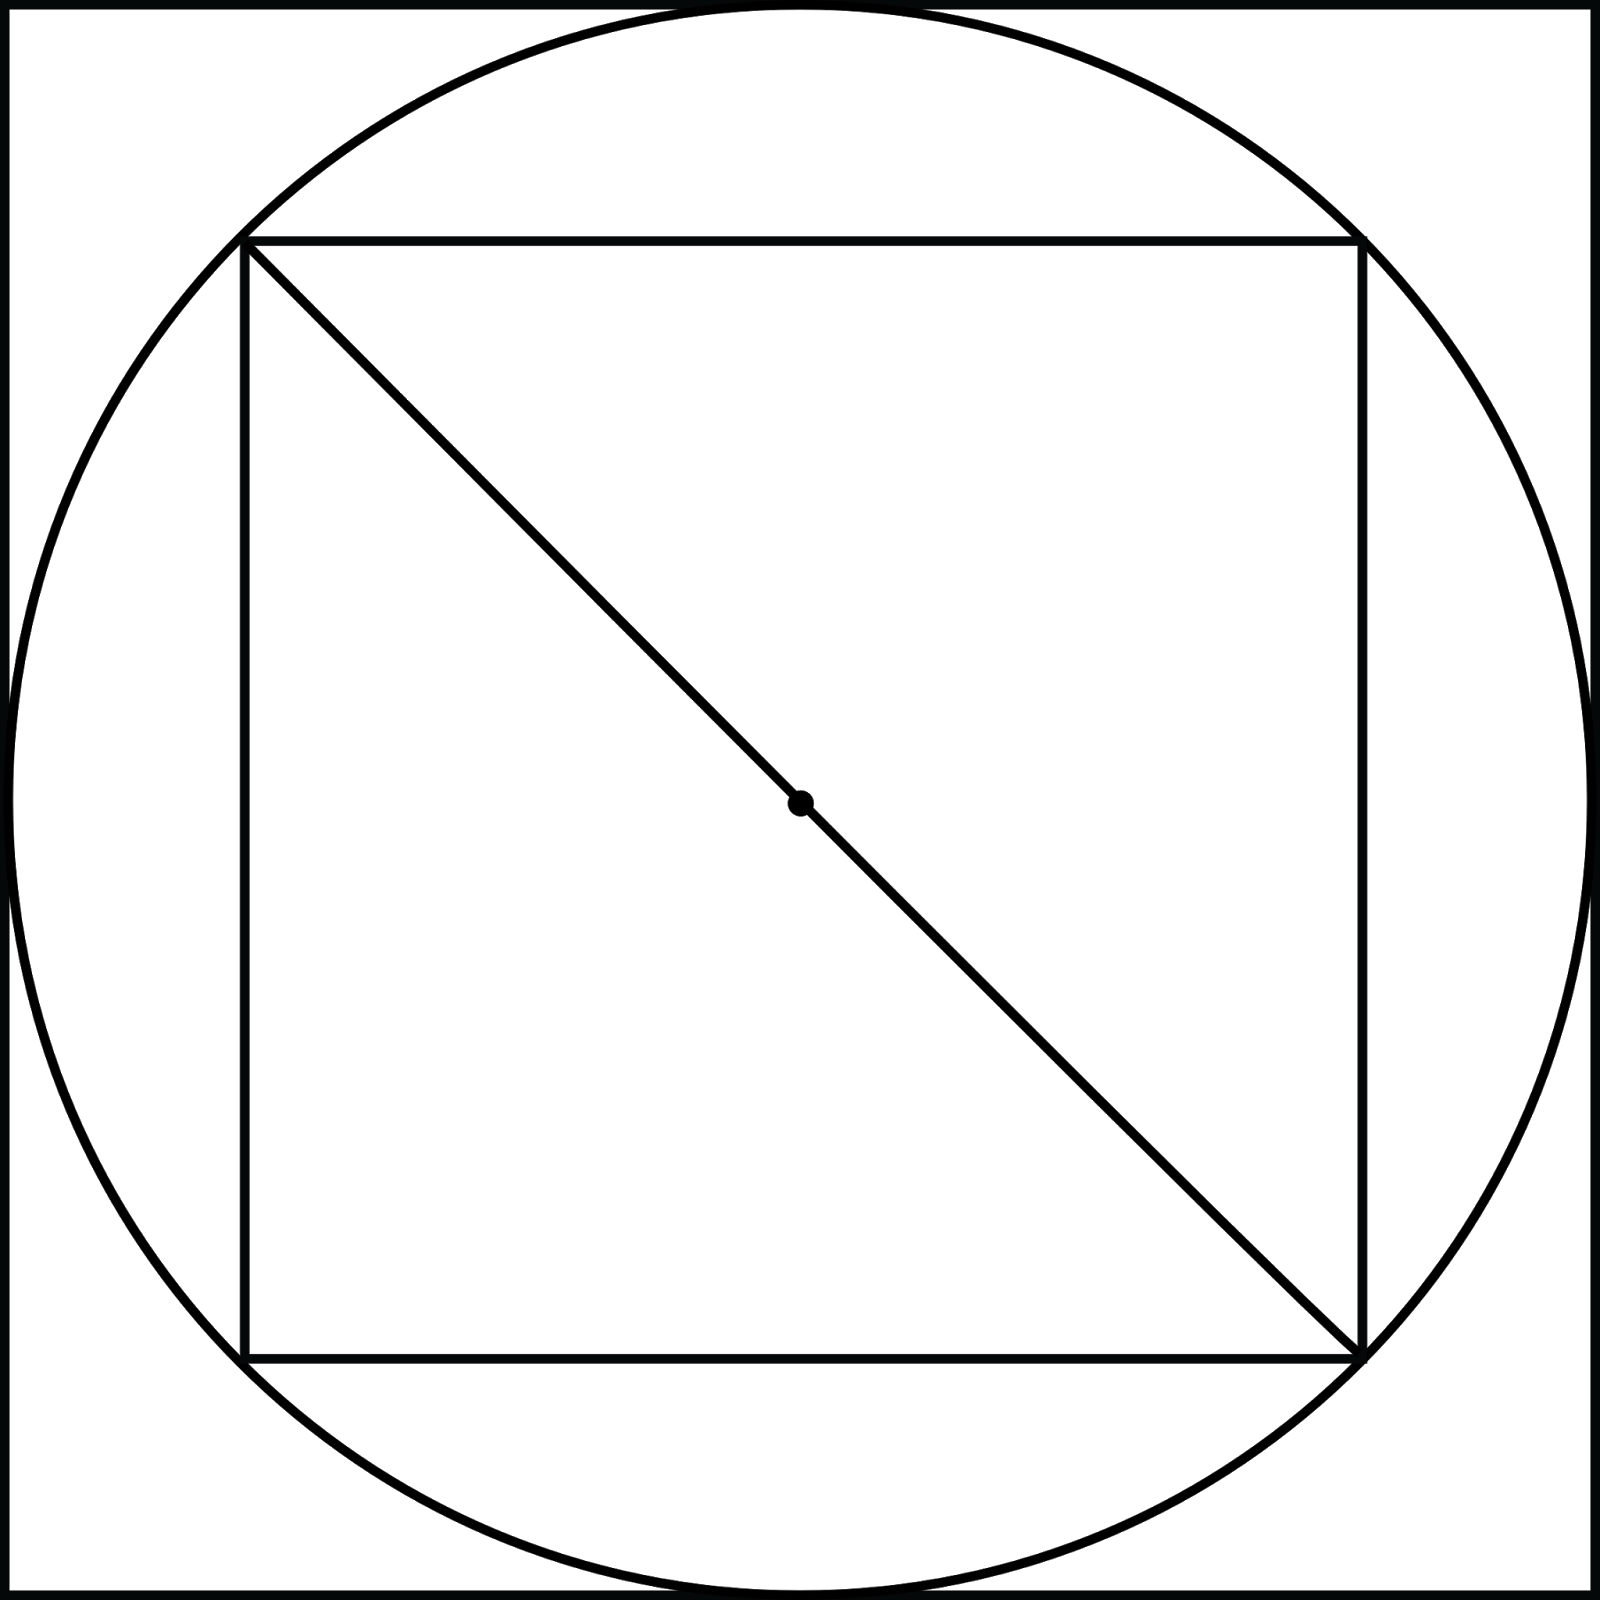 Круг правильная форма. Круг вписанный в квадрат. Квадрат вписанный в окружность вписанную в квадрат. Правильный квадрат вписанный в окружность. Квадра вписанный в окружность.